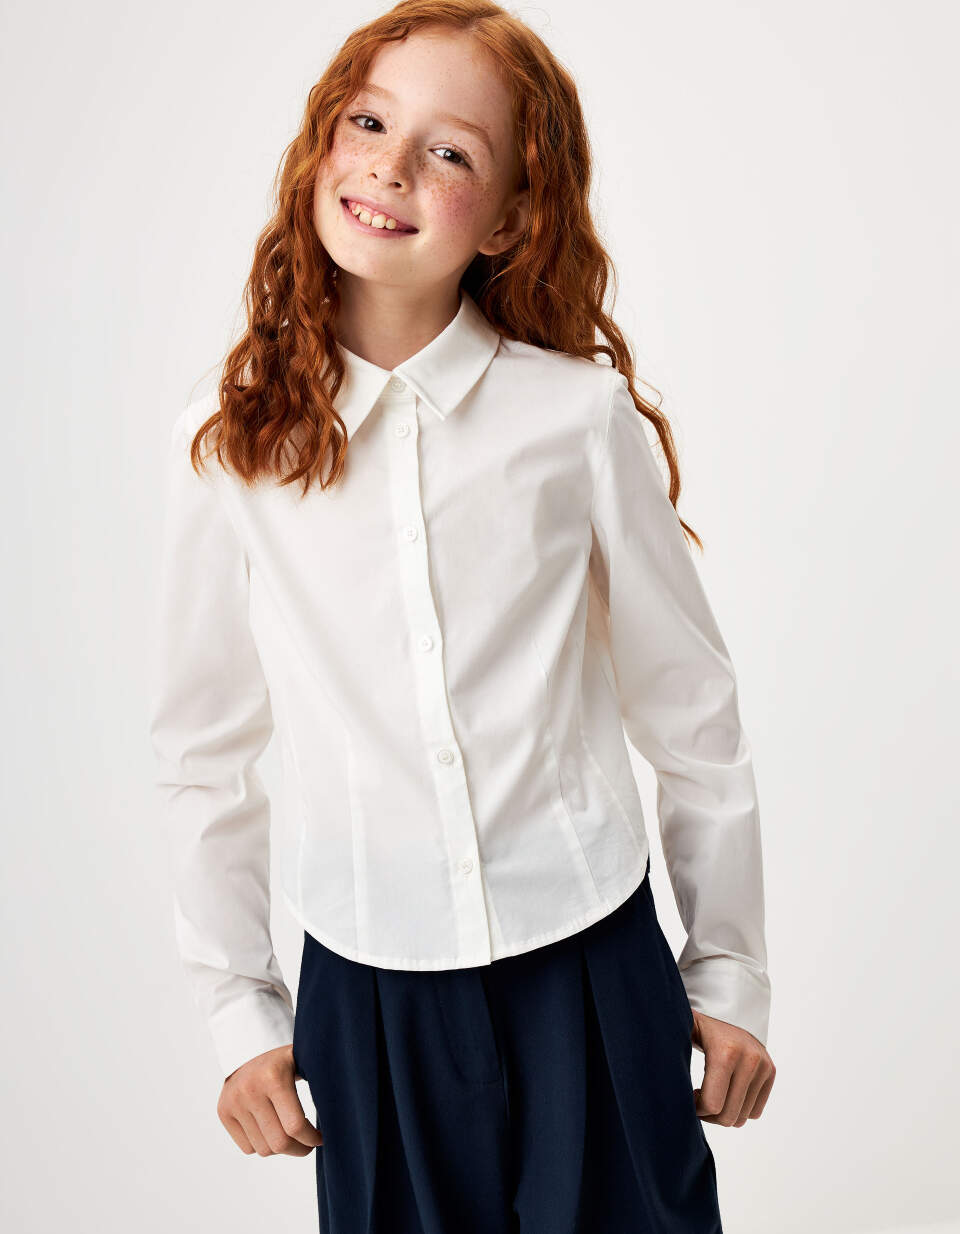 Укороченная приталенная блузка для девочек